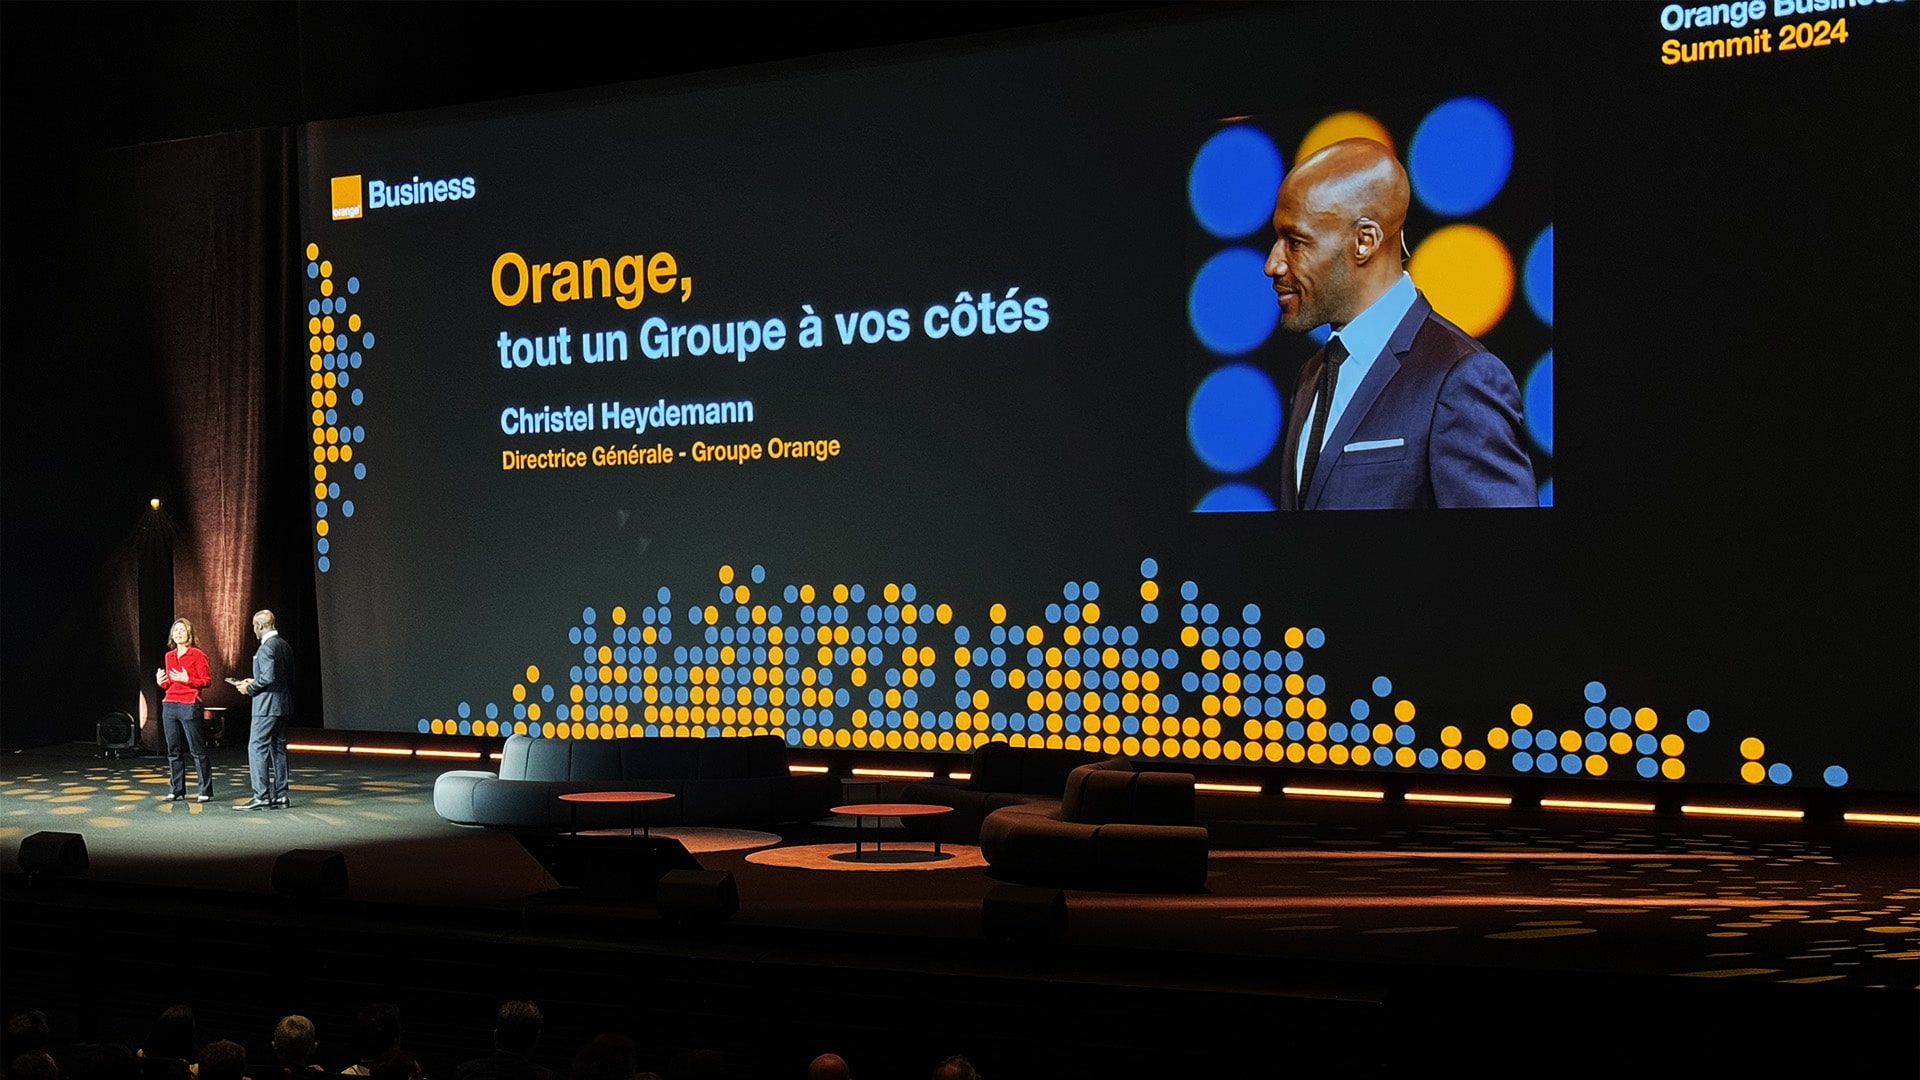 Orange Business Summit 2024